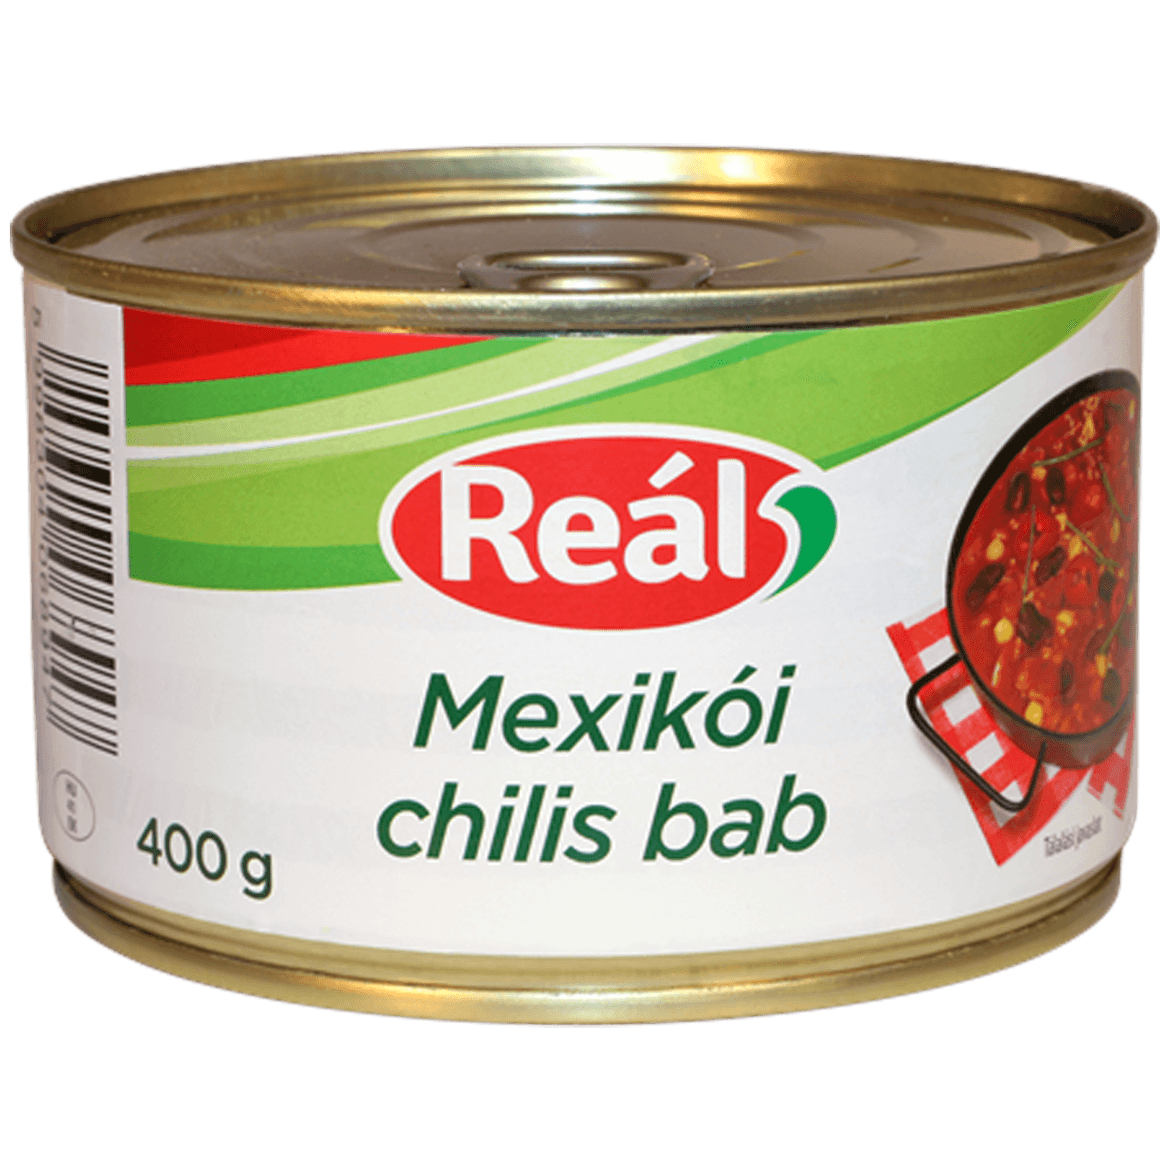 Reál Mexikói chilis bab